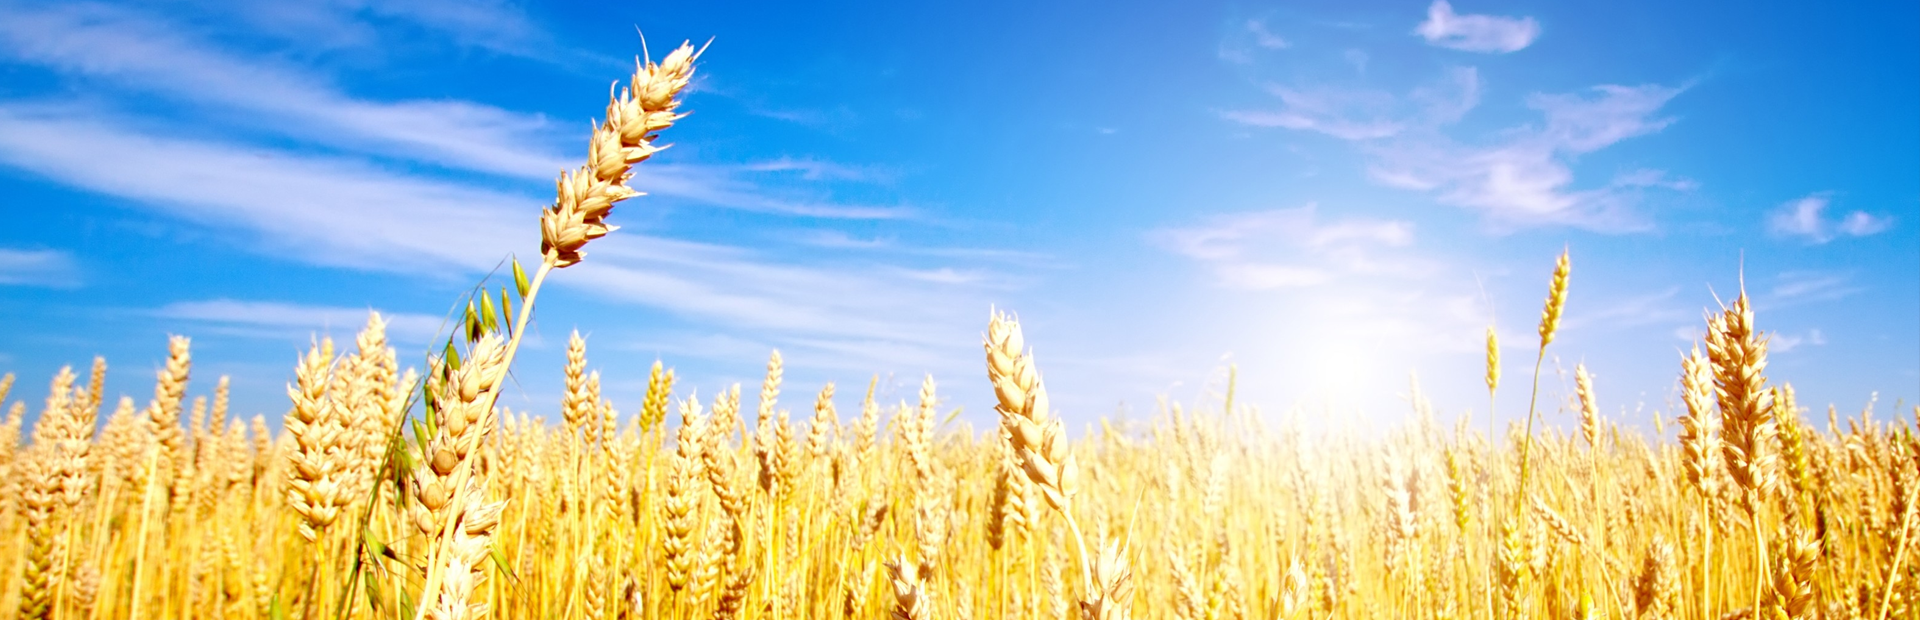 Пшеница панорама